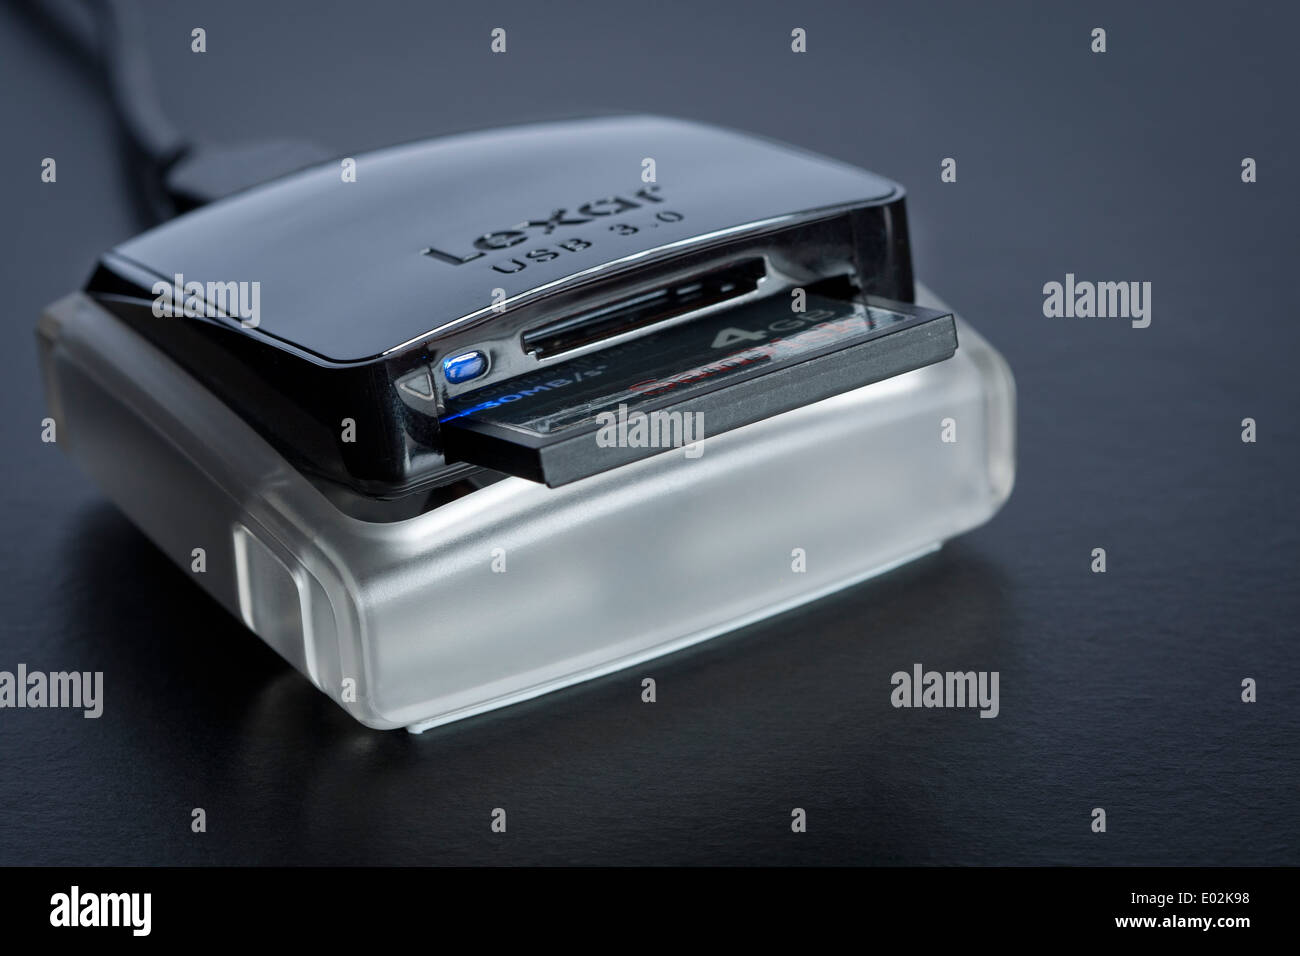 Lecteur carte mémoire SANDISK multi-cartes USB-C ImageMate Pro pour carte  SDHC / SDXC / microSD / CompactFlash